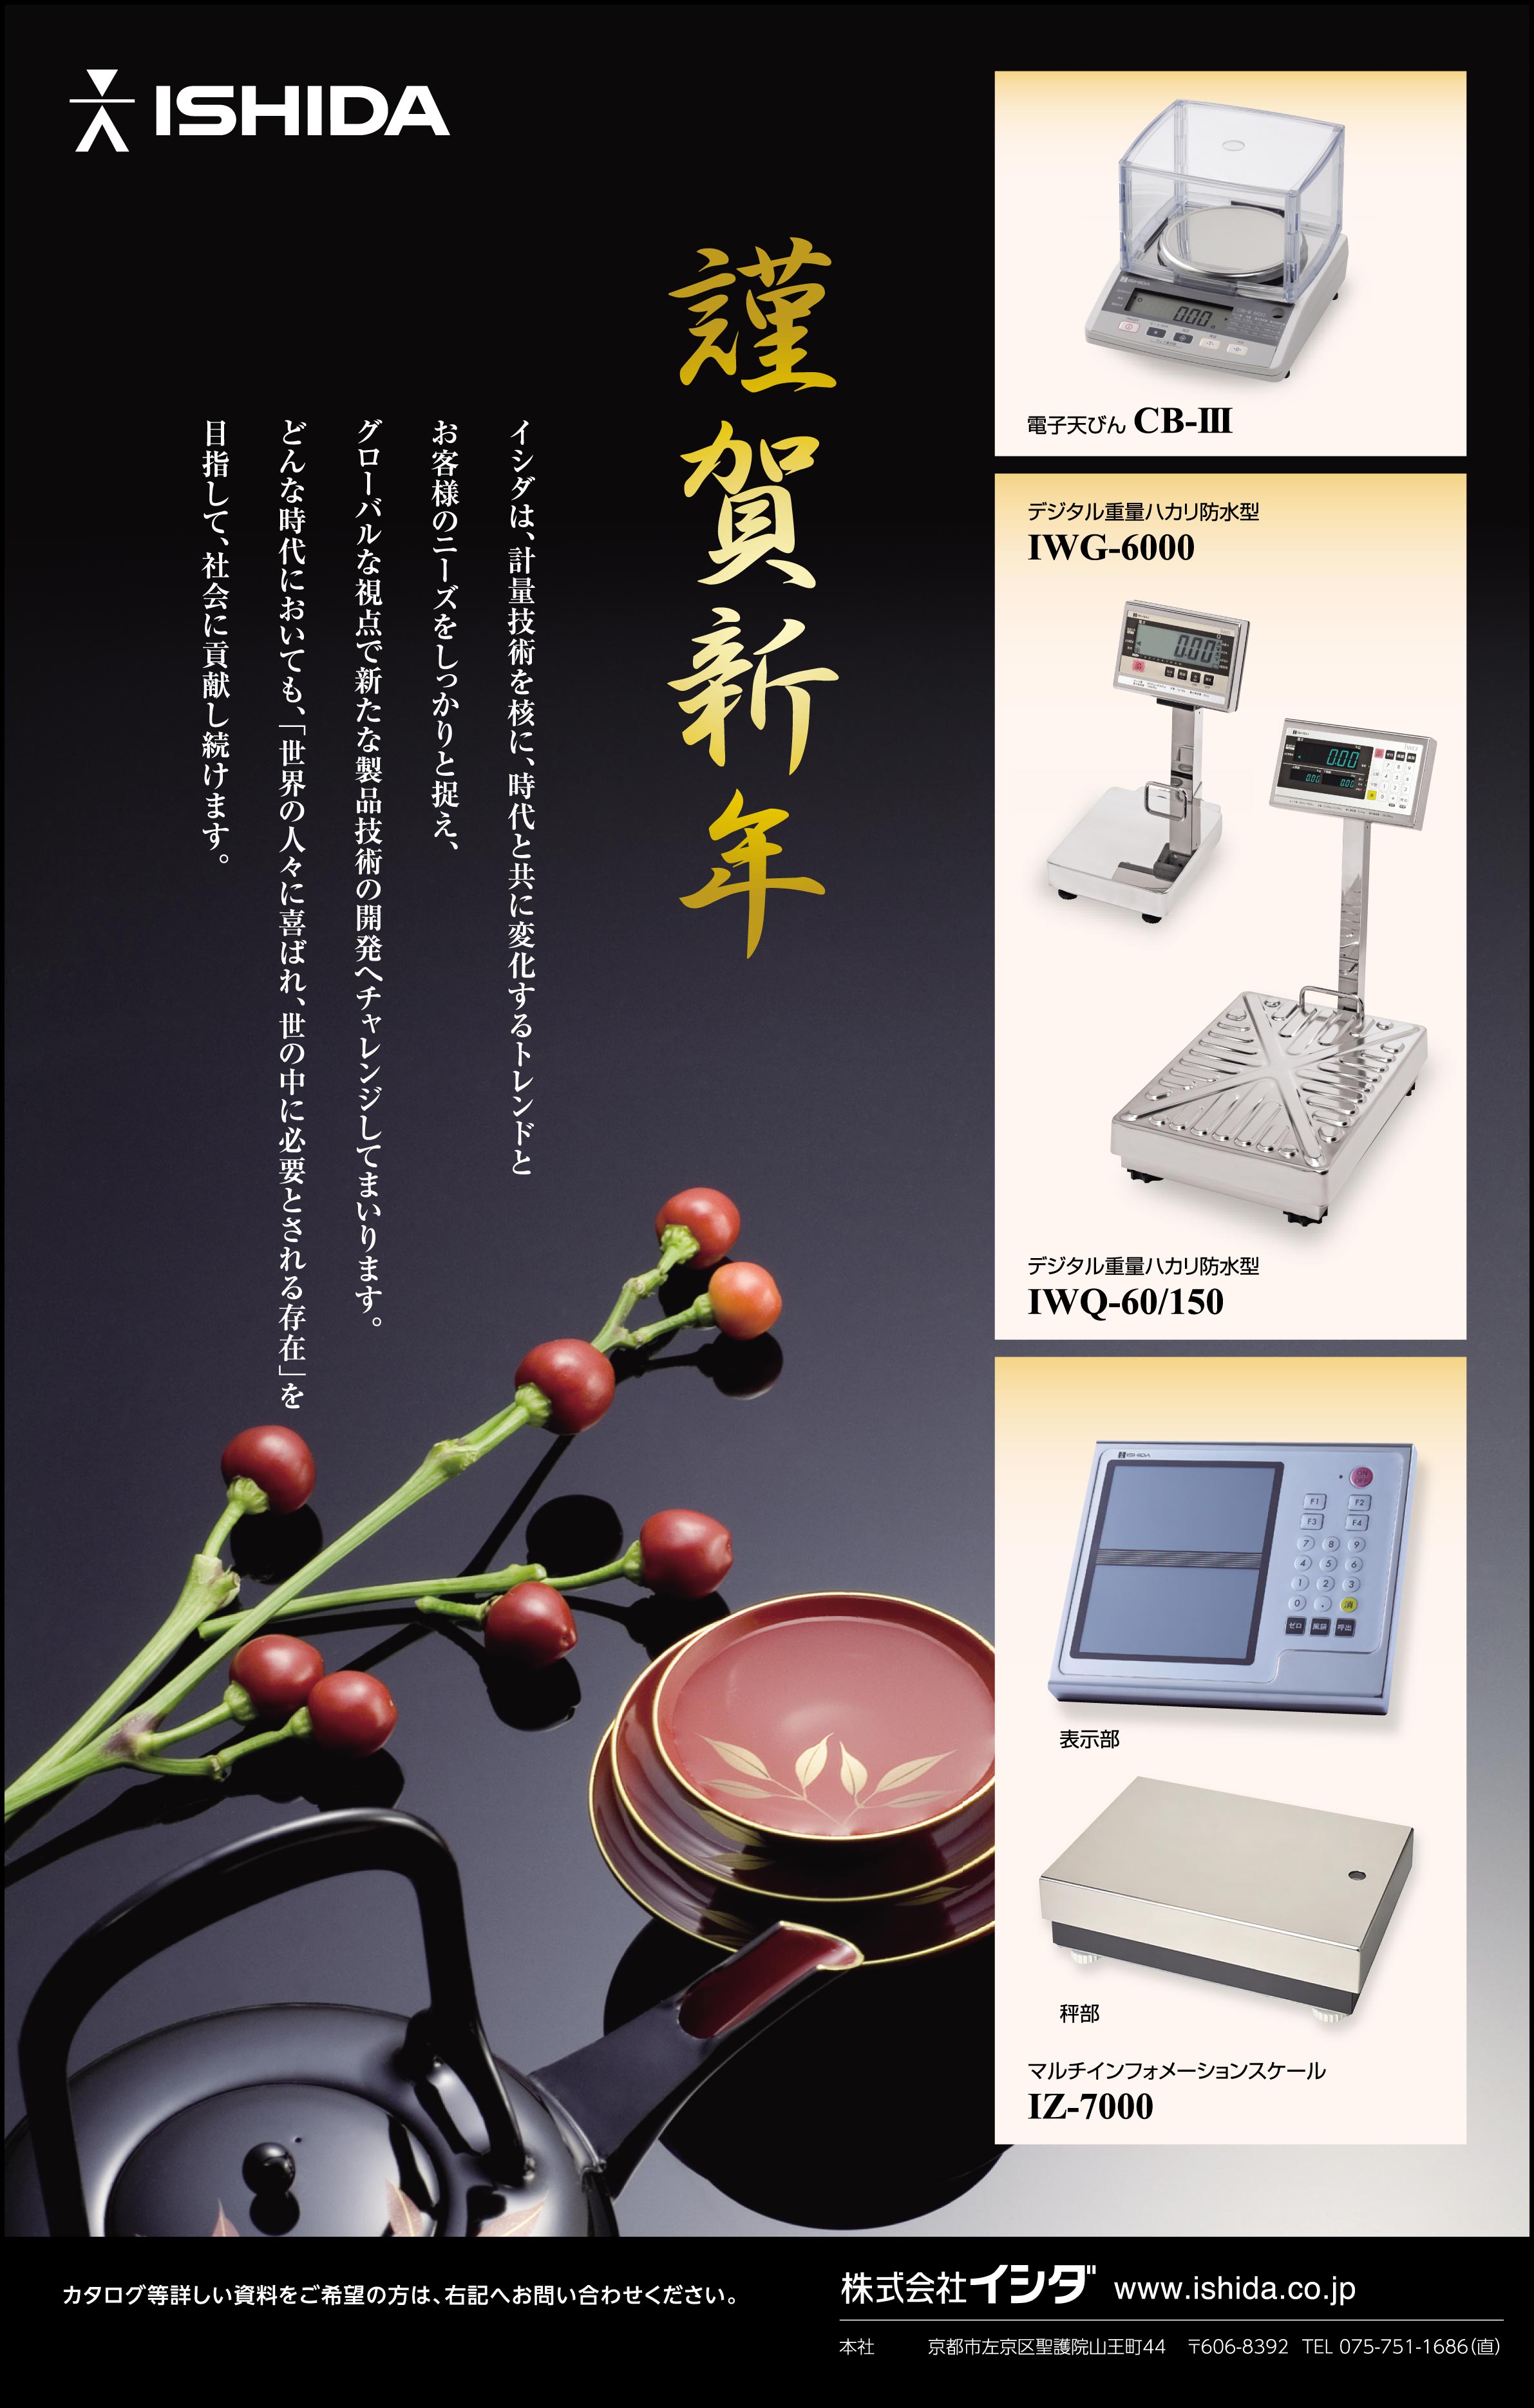 東亜ディーケーケー 自動サンプリング測定装置 AST-3210 通販